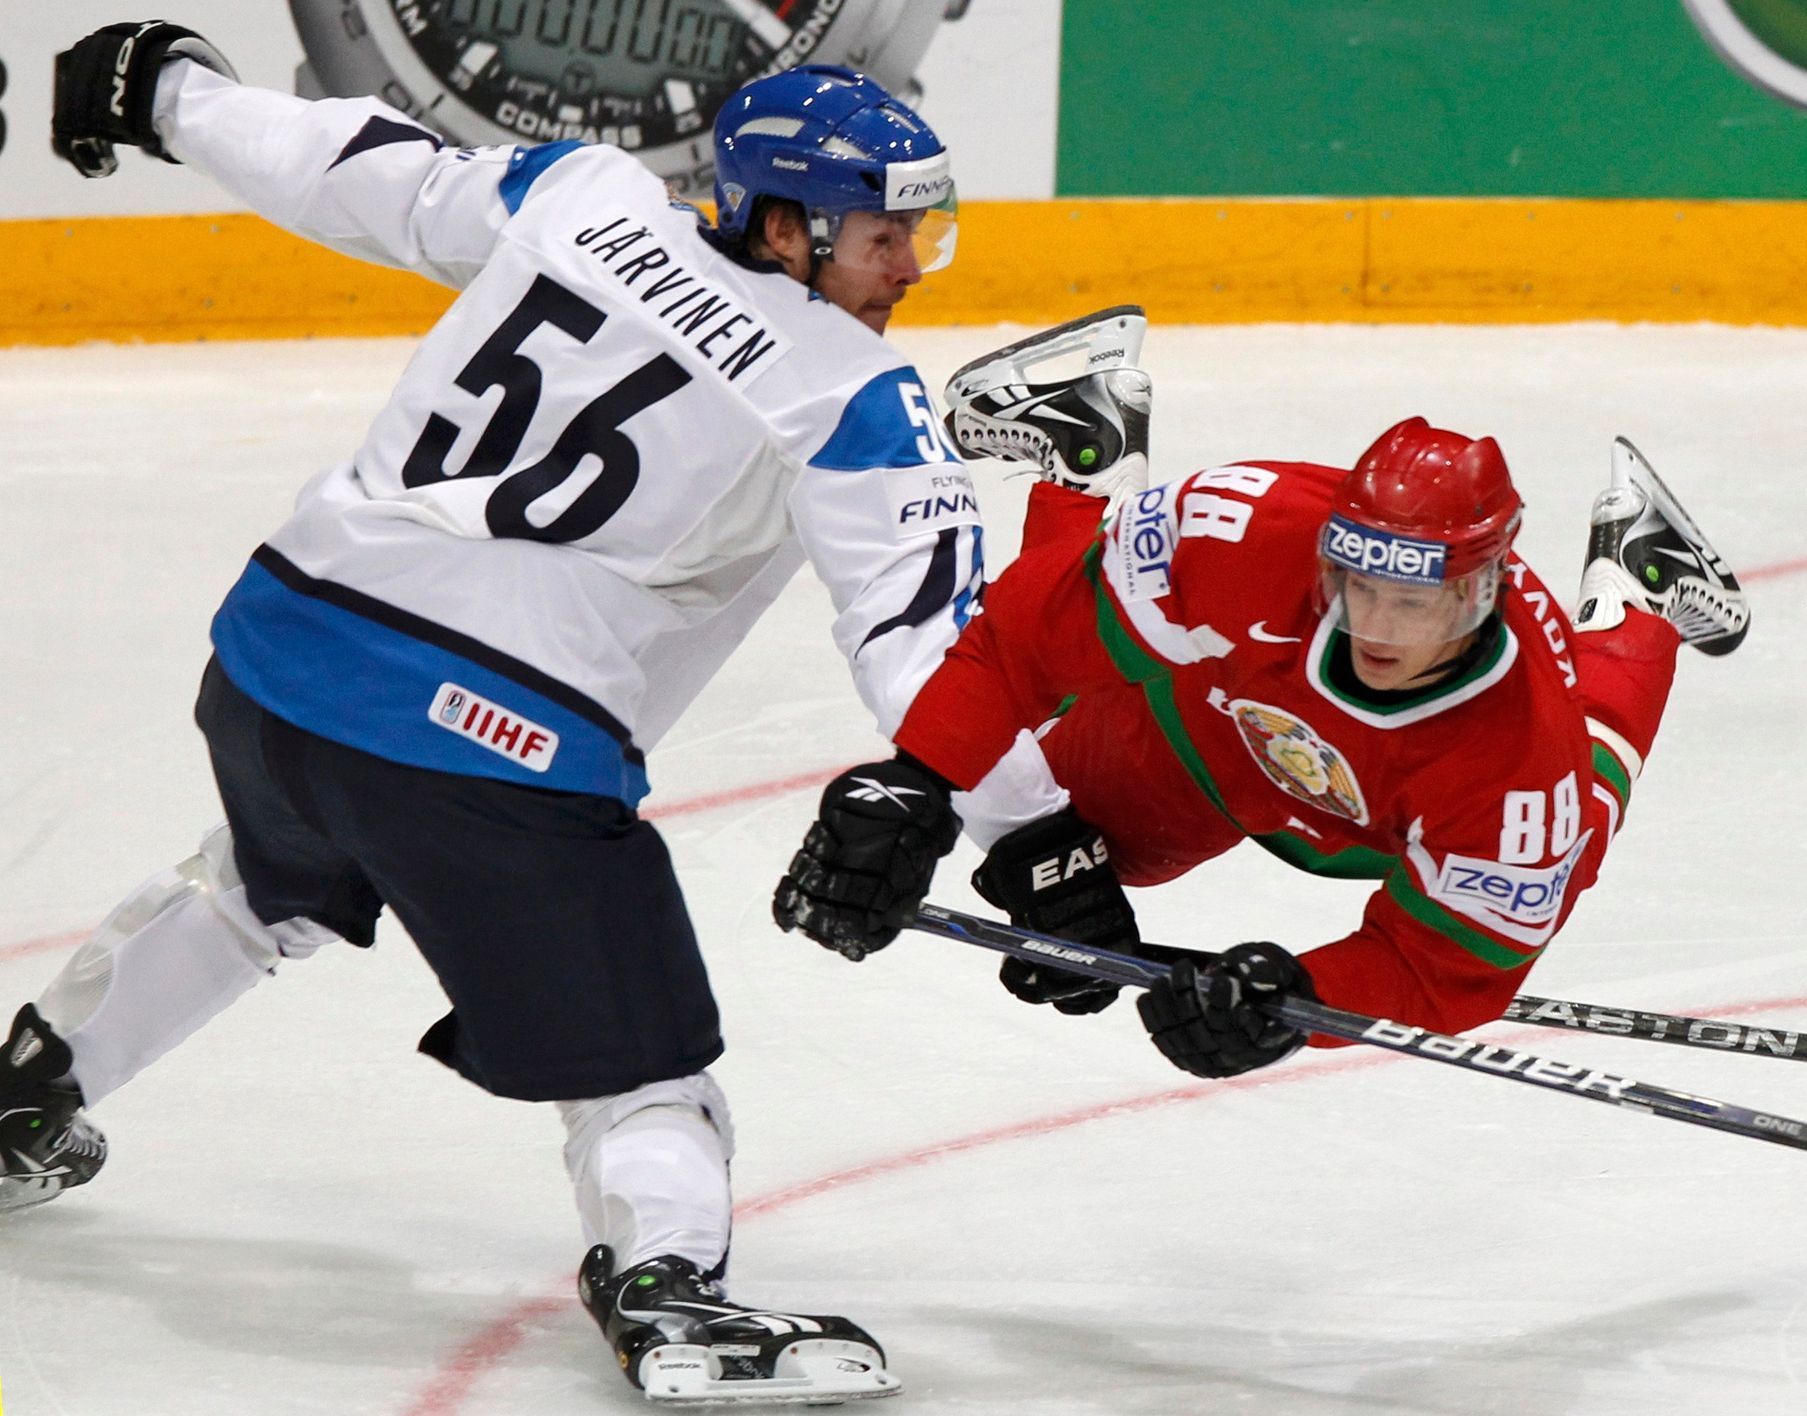 MS v hokeji 2012: Finsko - Bělorusko (Jarvinen, Kovyršin)